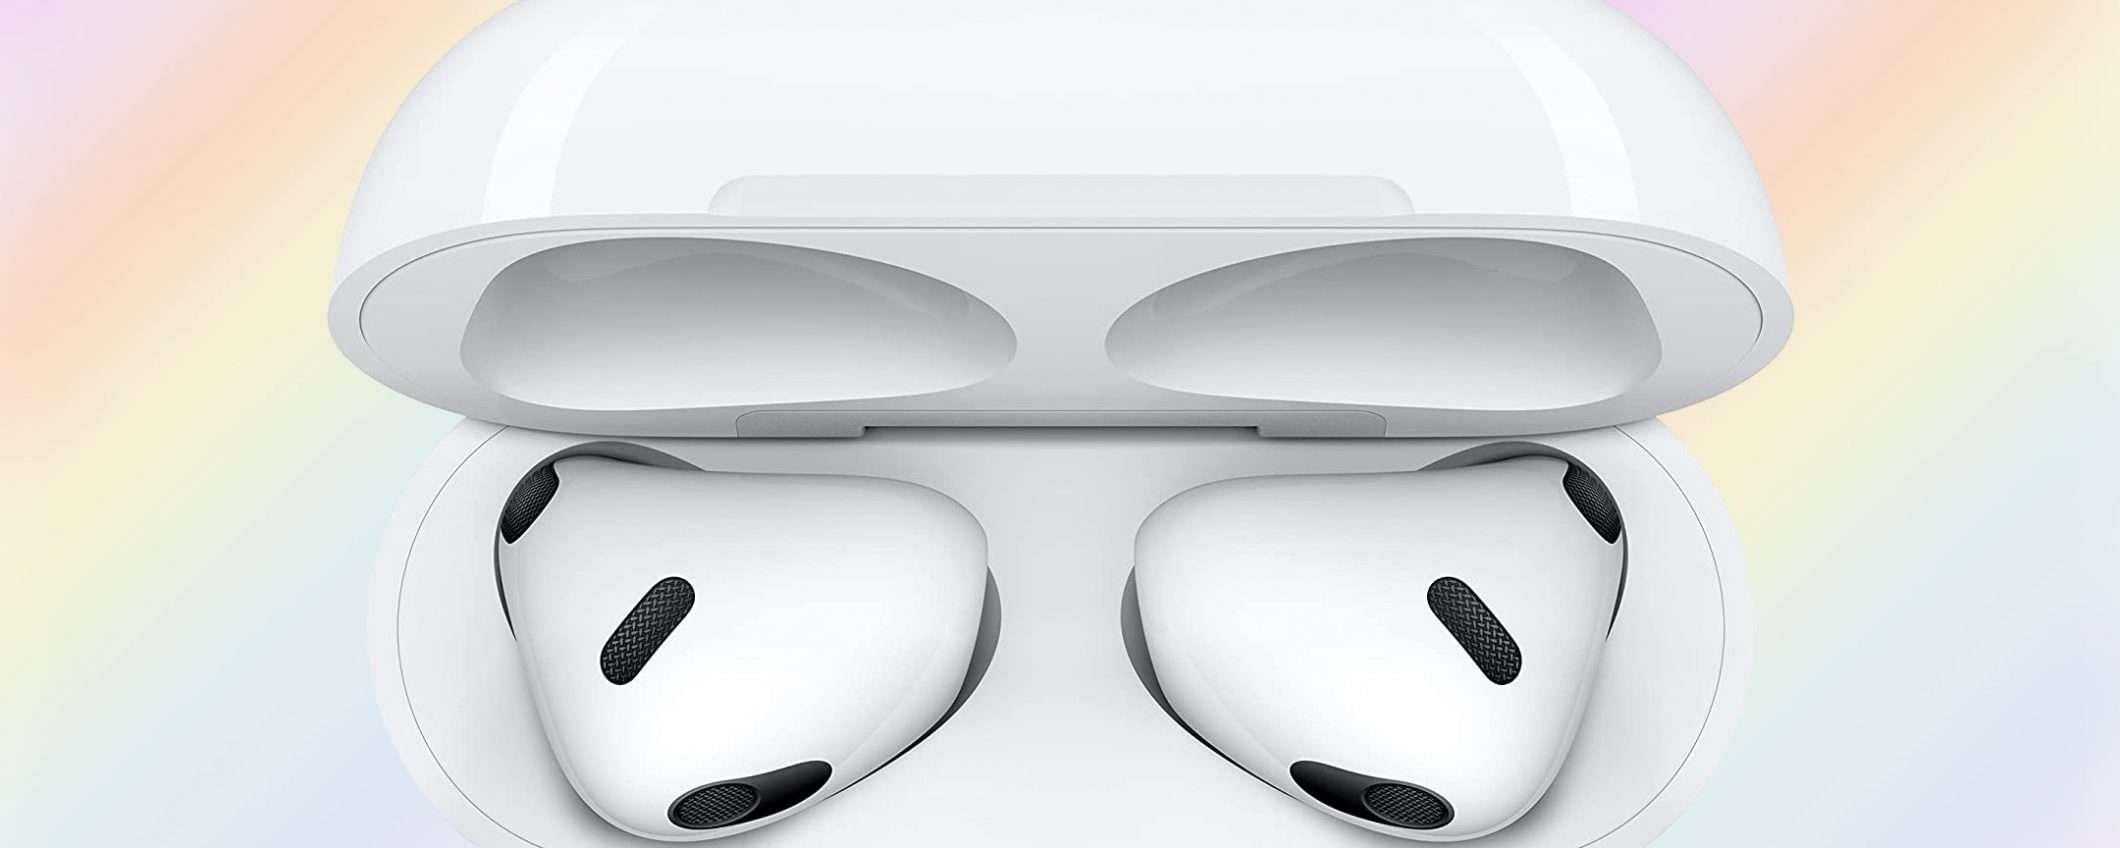 Nuovi Apple AirPods: la terza generazione è su Amazon